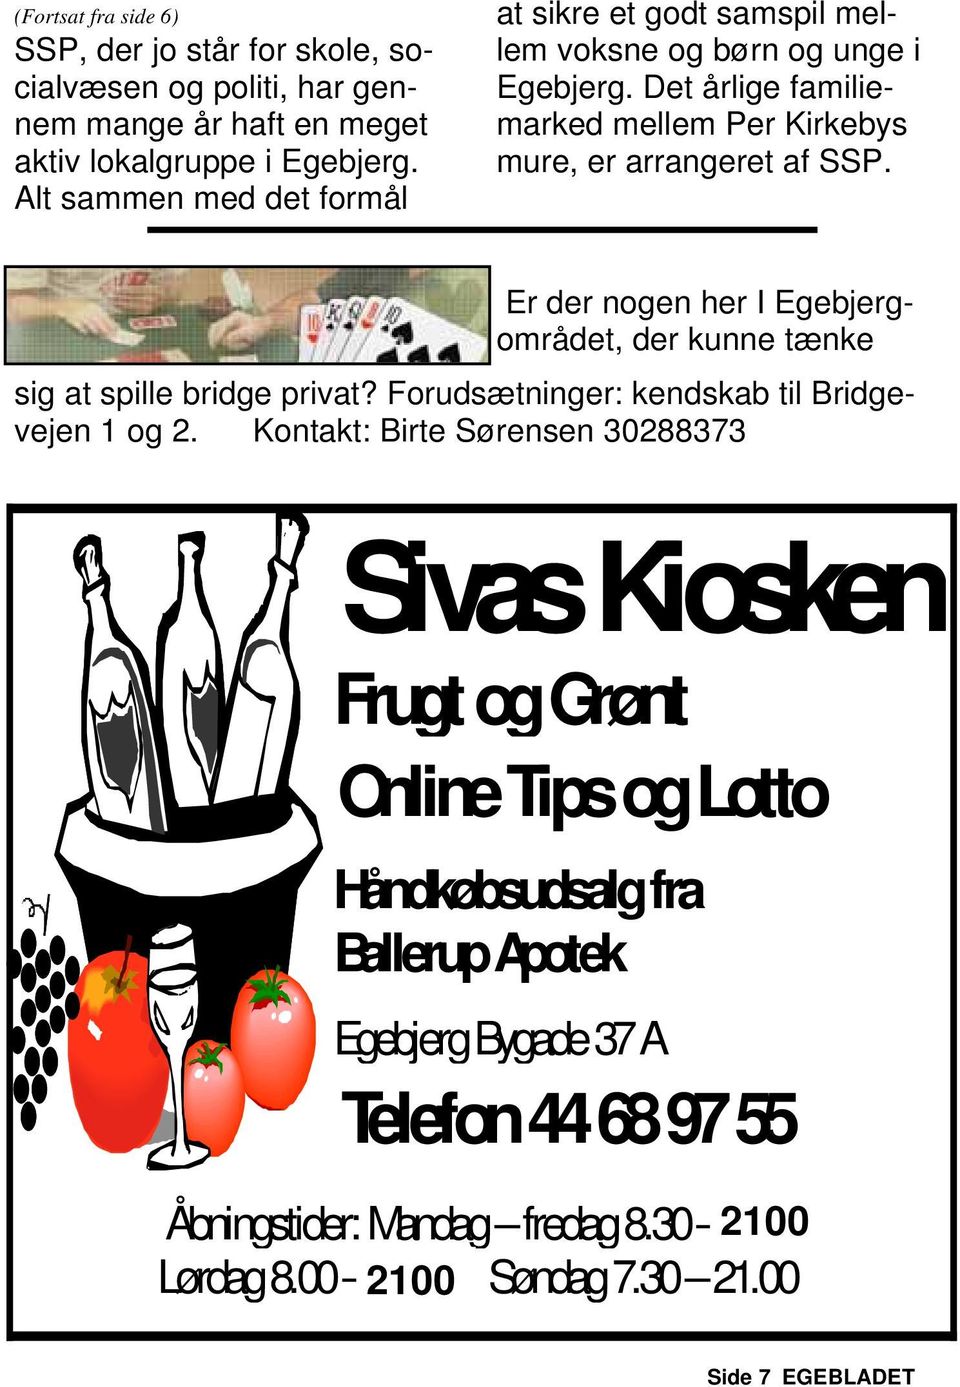 Er der nogen her I Egebjergområdet, der kunne tænke sig at spille bridge privat? Forudsætninger: kendskab til Bridgevejen 1 og 2.